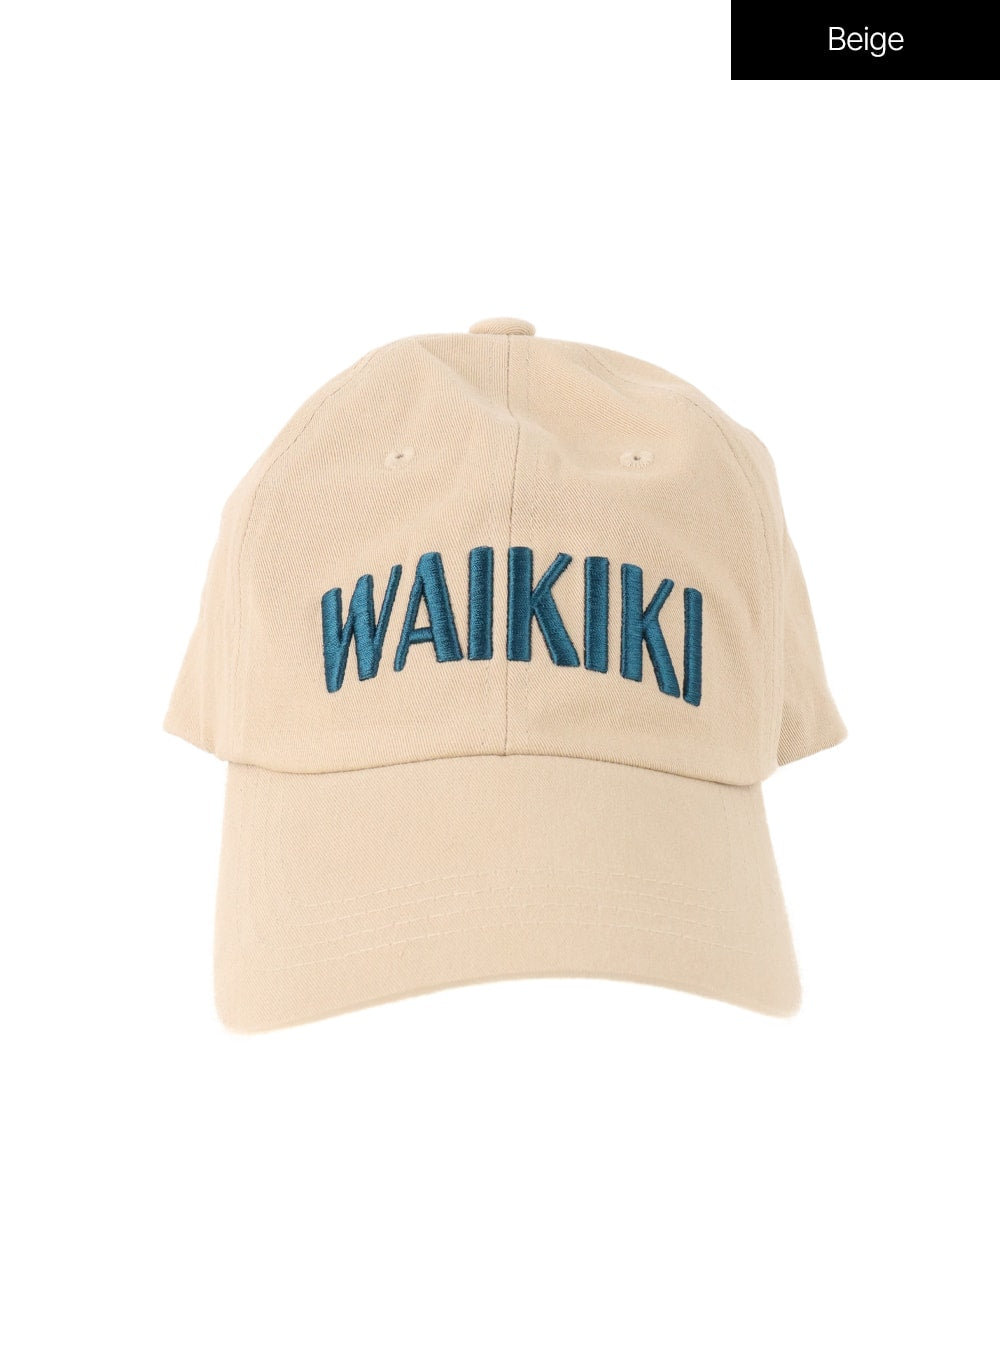 waikiki-baseball-cap-if413 / Beige